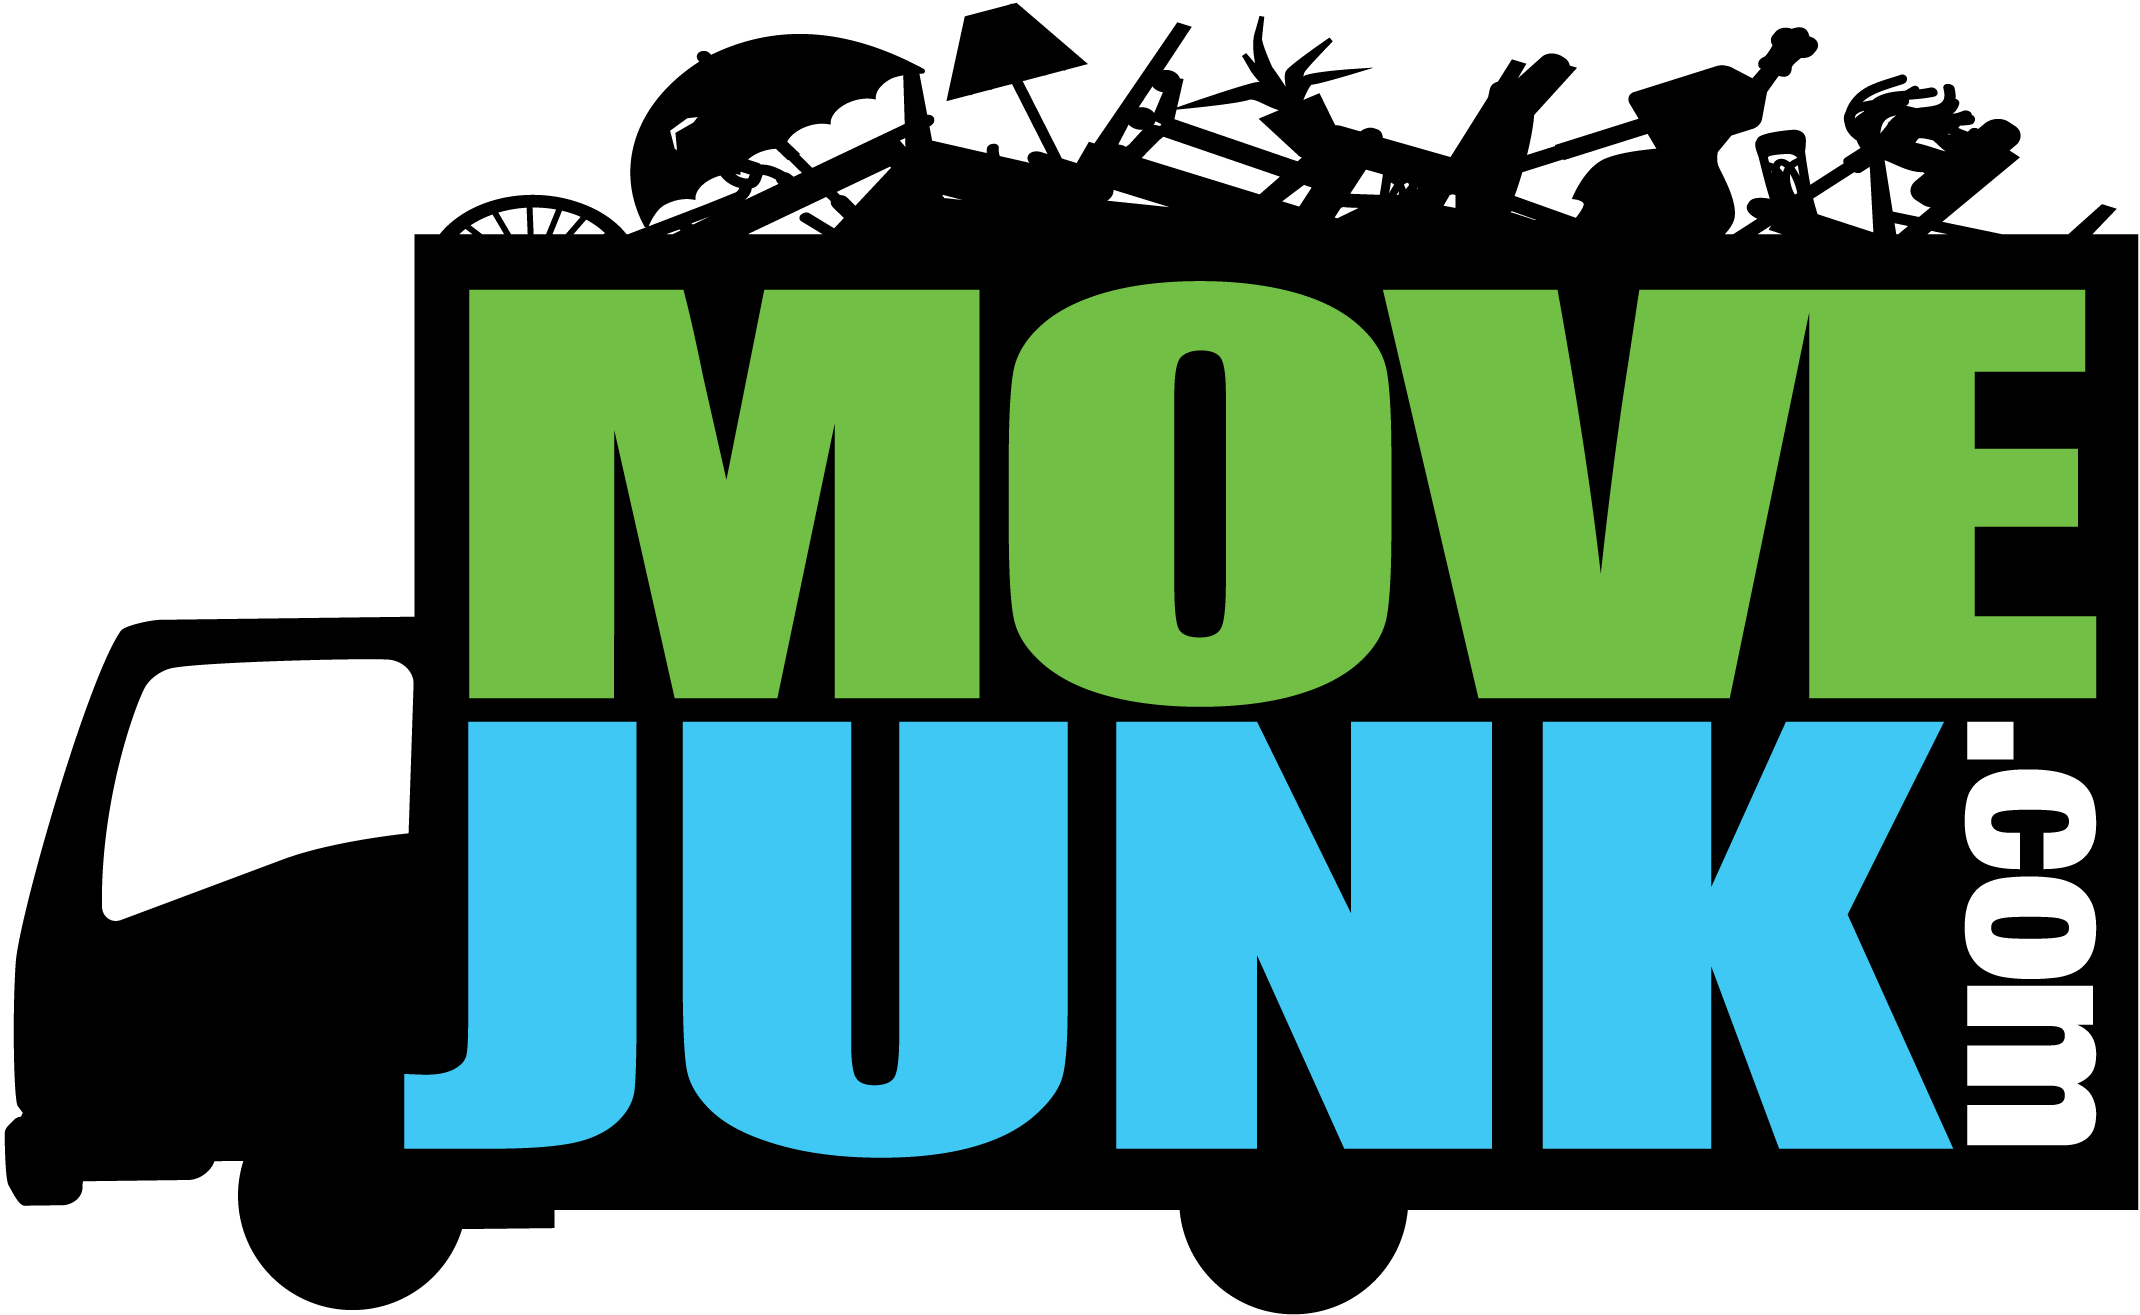 Move Junk